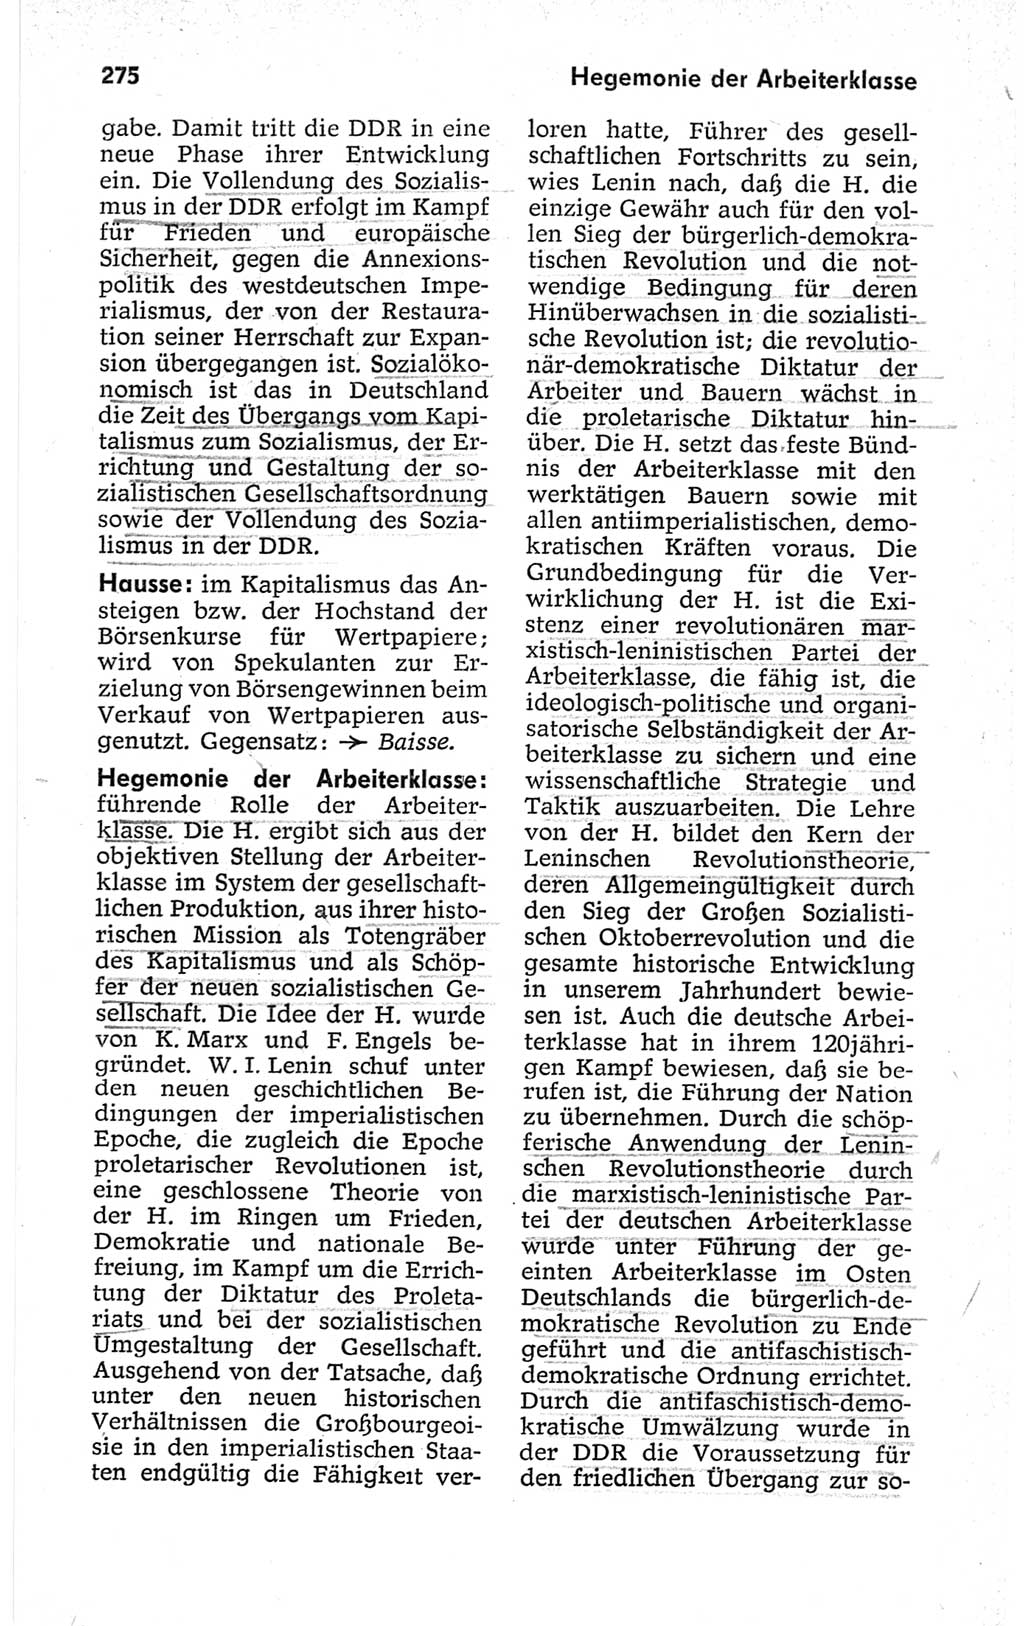 Kleines politisches Wörterbuch [Deutsche Demokratische Republik (DDR)] 1967, Seite 275 (Kl. pol. Wb. DDR 1967, S. 275)